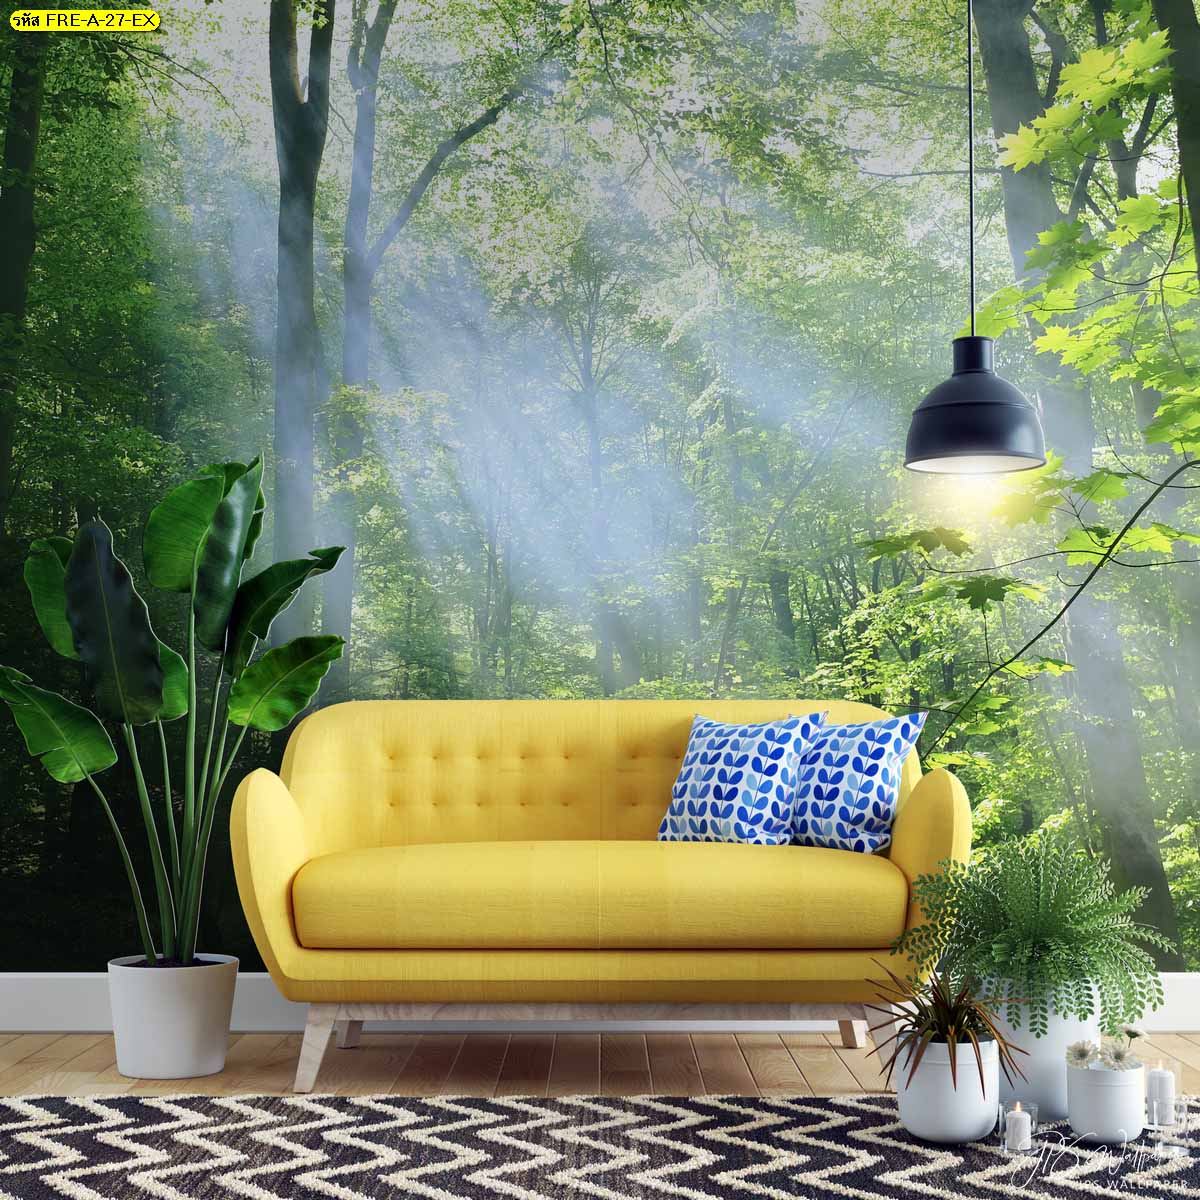 ไอเดียห้องนั่งเล่นโซฟาสีเหลือง แบบห้องนั่งเล่นสดใสลายธรรมชาติ ตกแต่งต้นไม้ในห้องนั่งเล่น